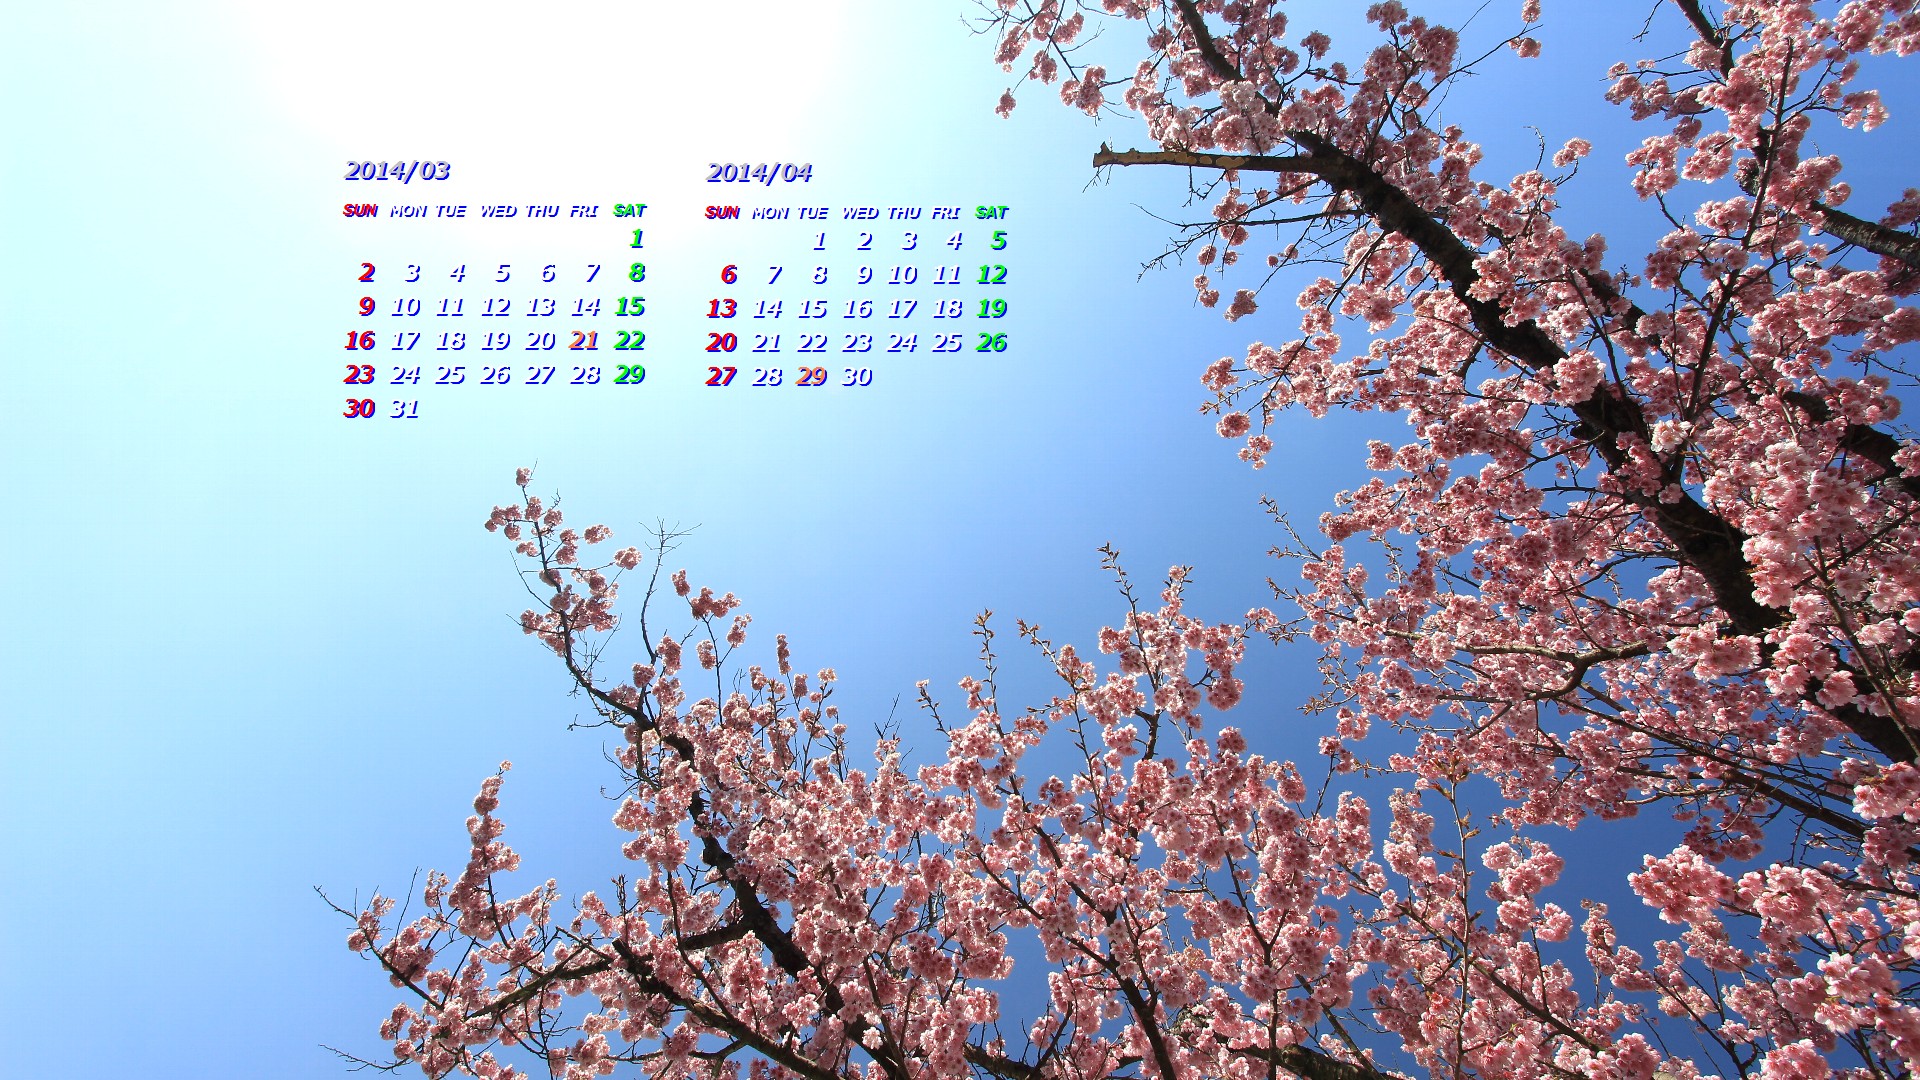 椿寒桜 カレンダー壁紙館 昴 無料ワイド